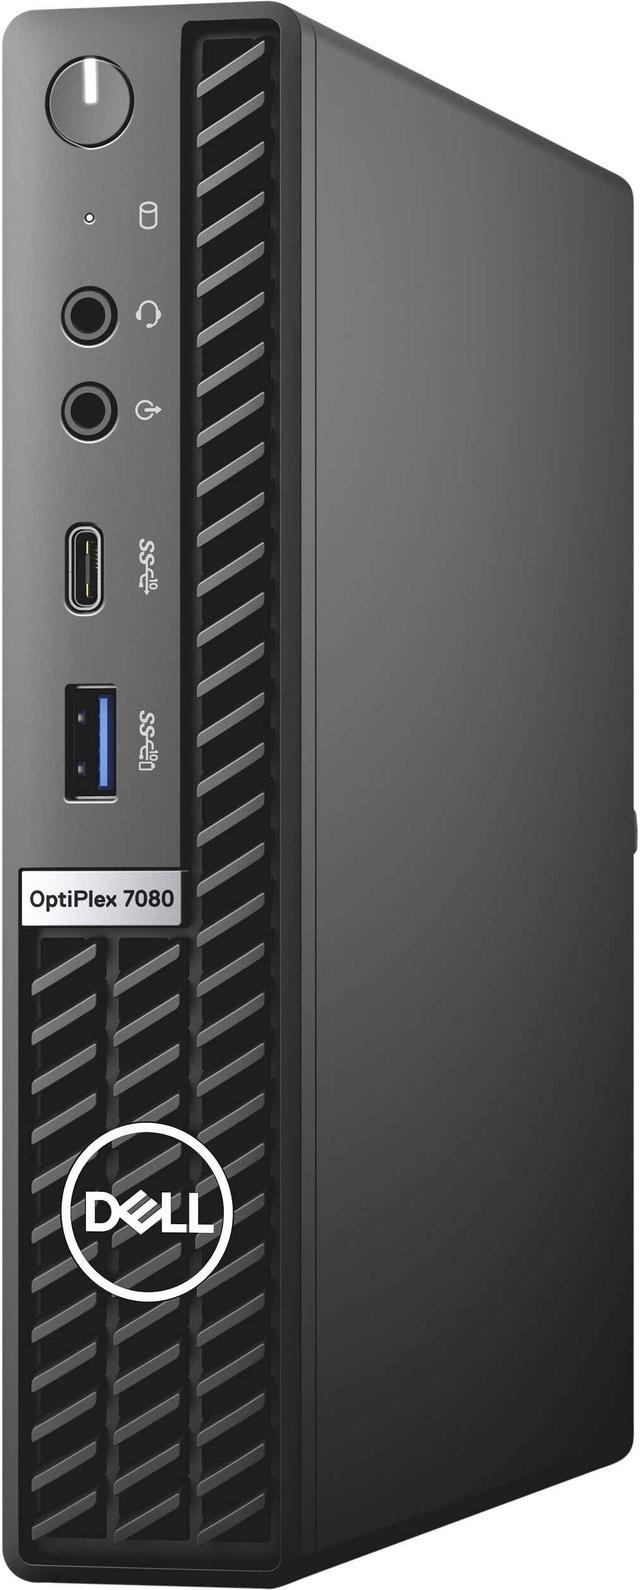 Dell Optiplex 7080 Micro Form Factor Desktop, Intel Six-Core i5 10500T  2.3Ghz, 8GB DDR4, 128GB SSD Hard Drive, USB Type C, Windows 10 Pro